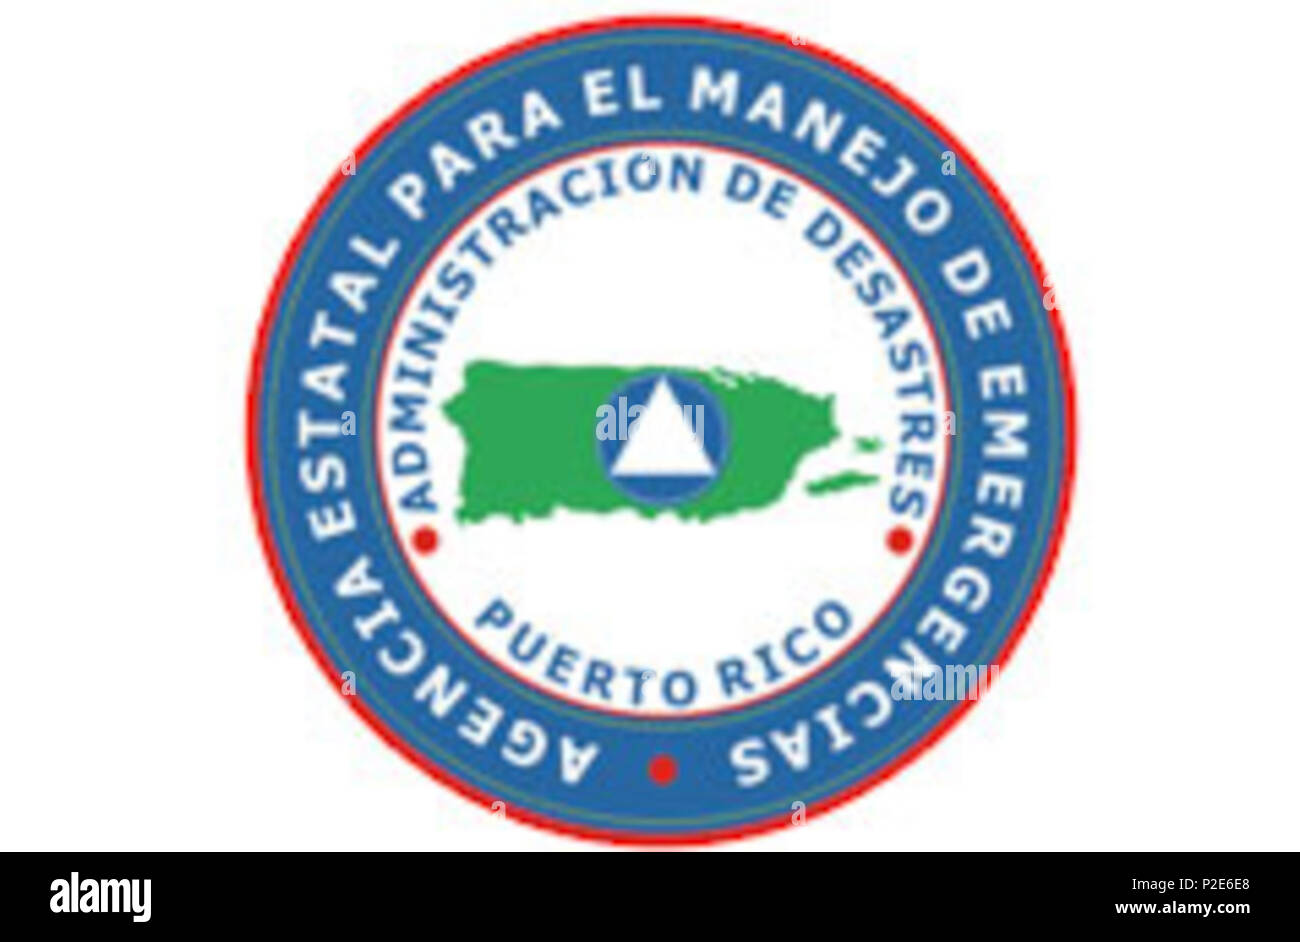 . Inglese: emblema ufficiale del Puerto Rico Agenzia di Stato per i casi di emergenza e di gestione di emergenza . Il 30 dicembre 2012 (originale data di caricamento). Puerto Rico agenzia di stato di emergenza e la gestione delle catastrofi 44 Puerto-rico-stato-agenzia-per-emergenza-e-disaster management-emblema Foto Stock